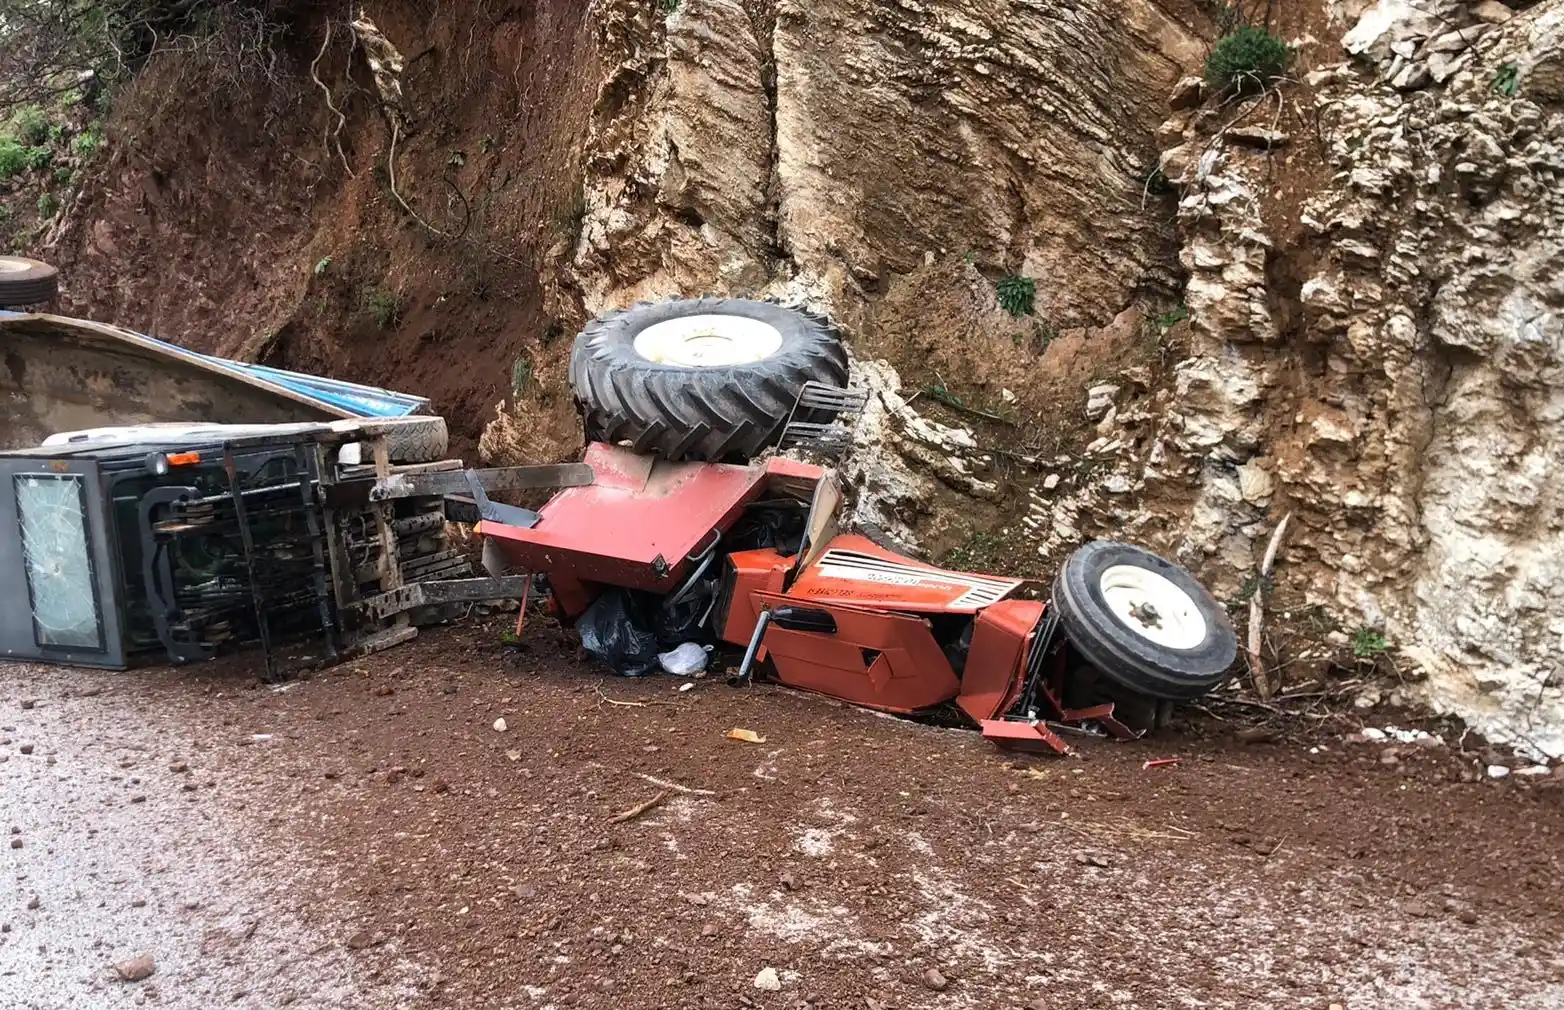 Belediyeye ait traktör kaza yaptı 1 yaralı
